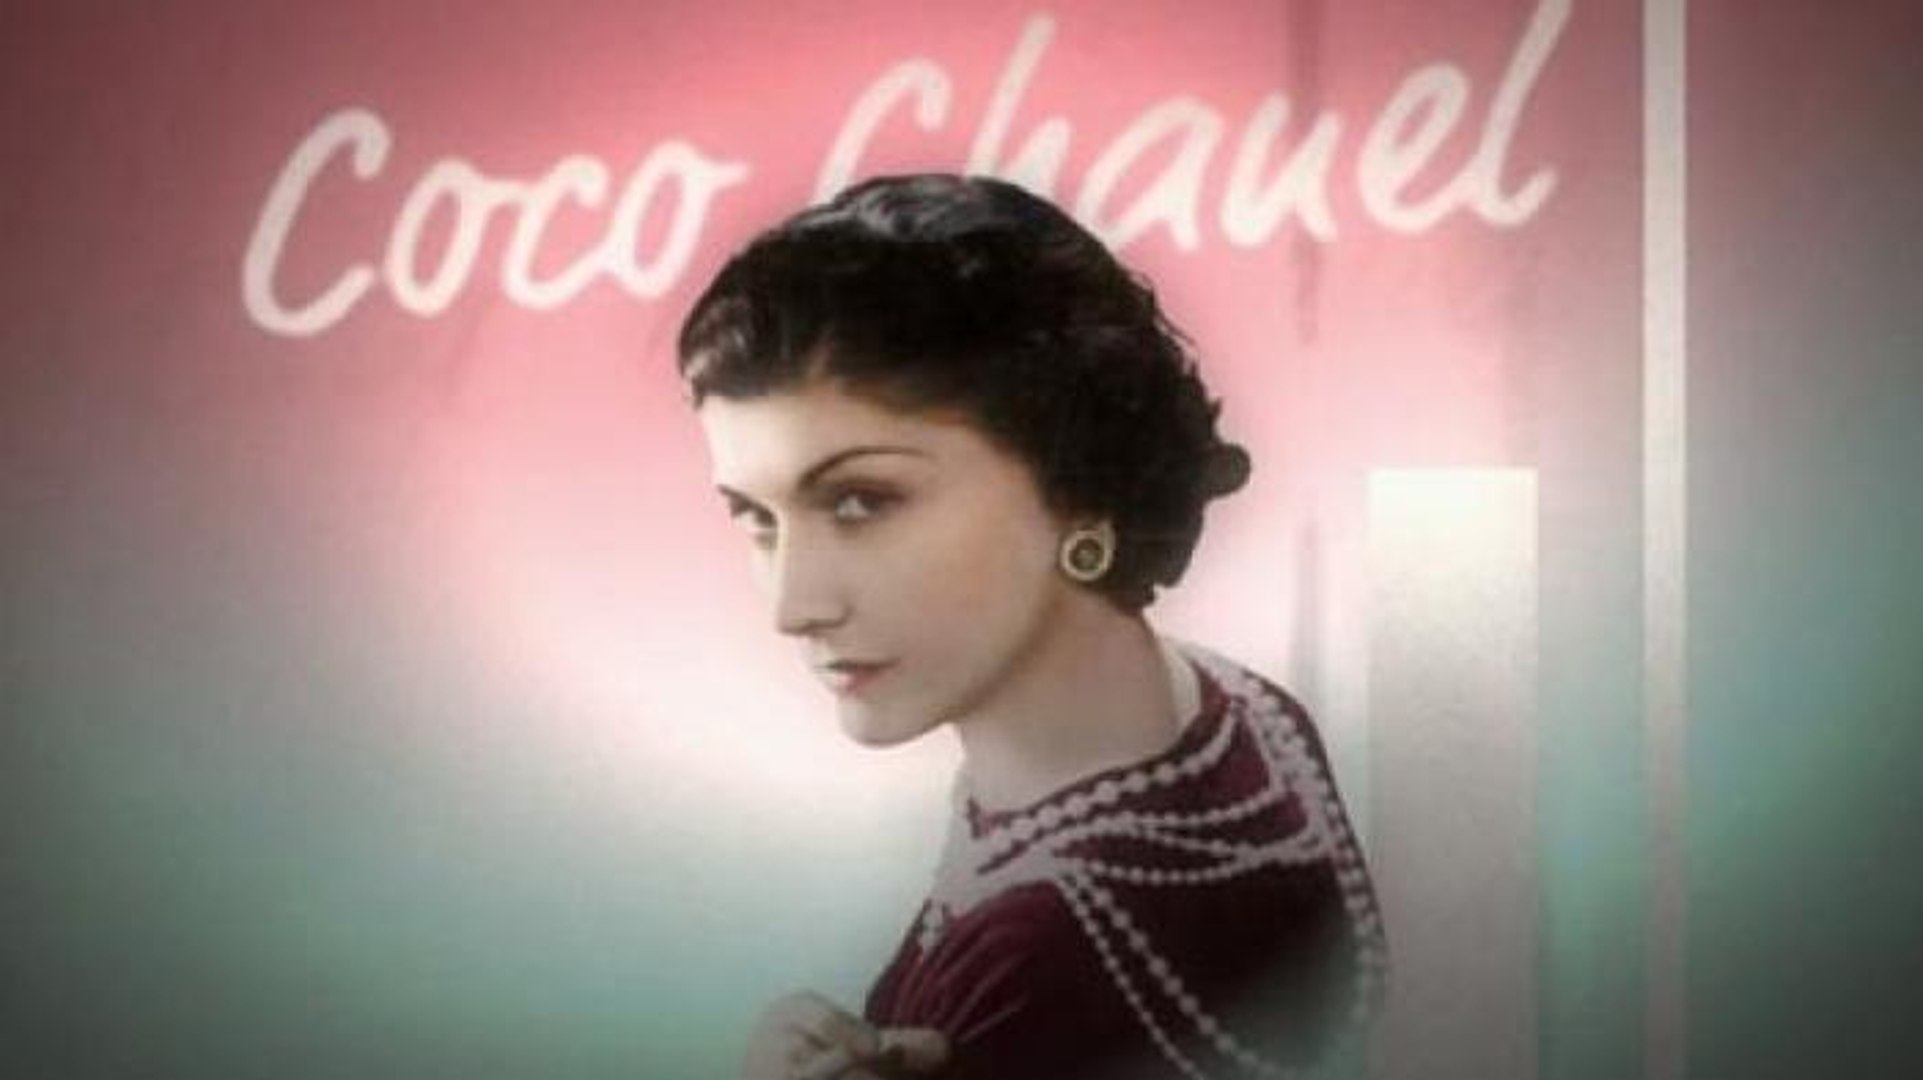 Coco Chanel: ¿la primera en ponerle pantalones a las mujeres